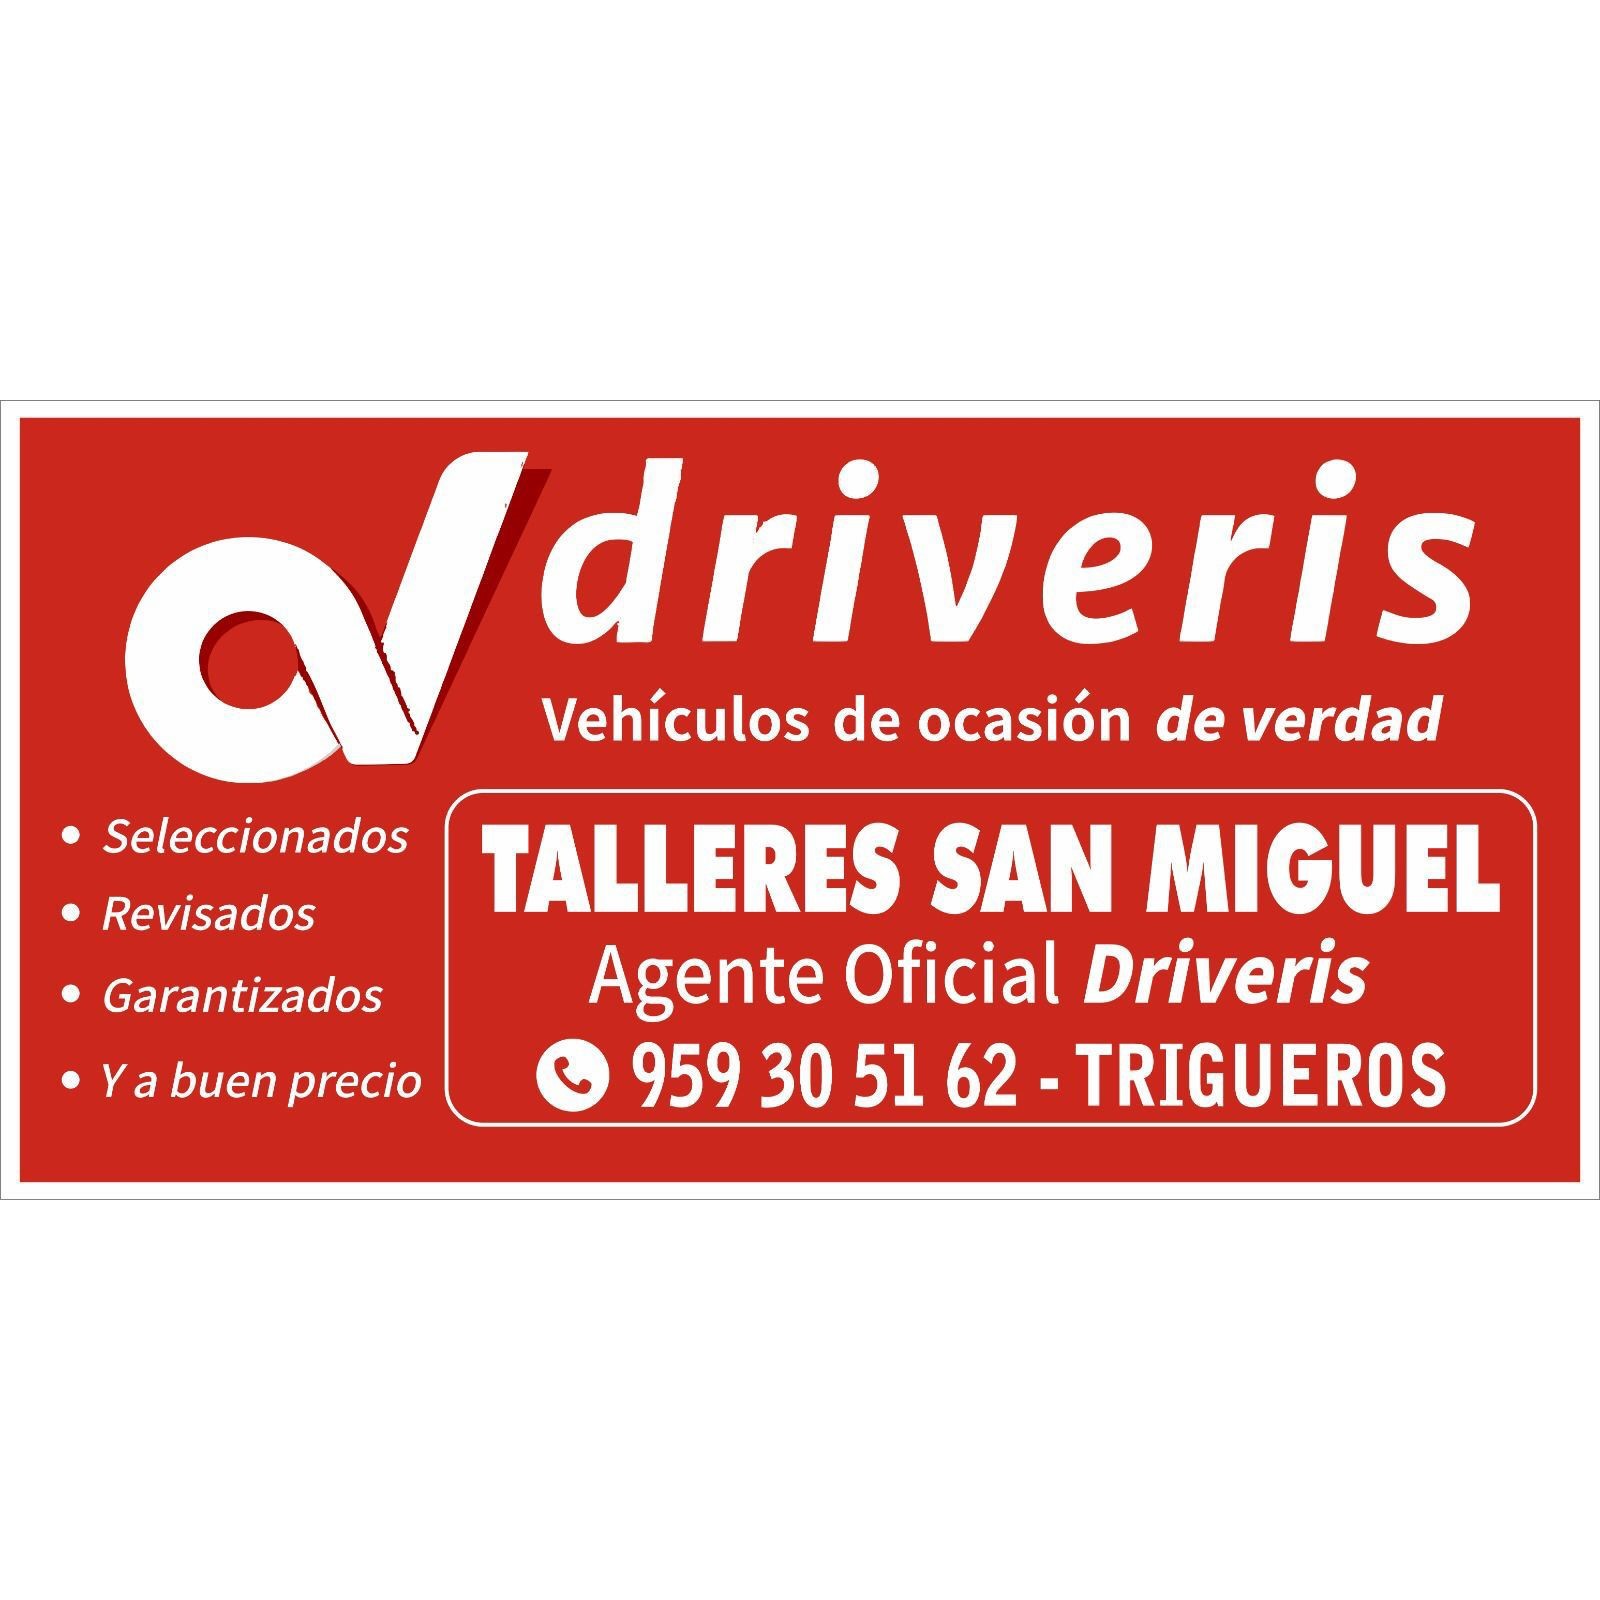 Talleres San Miguel Driveris Trigueros Logo